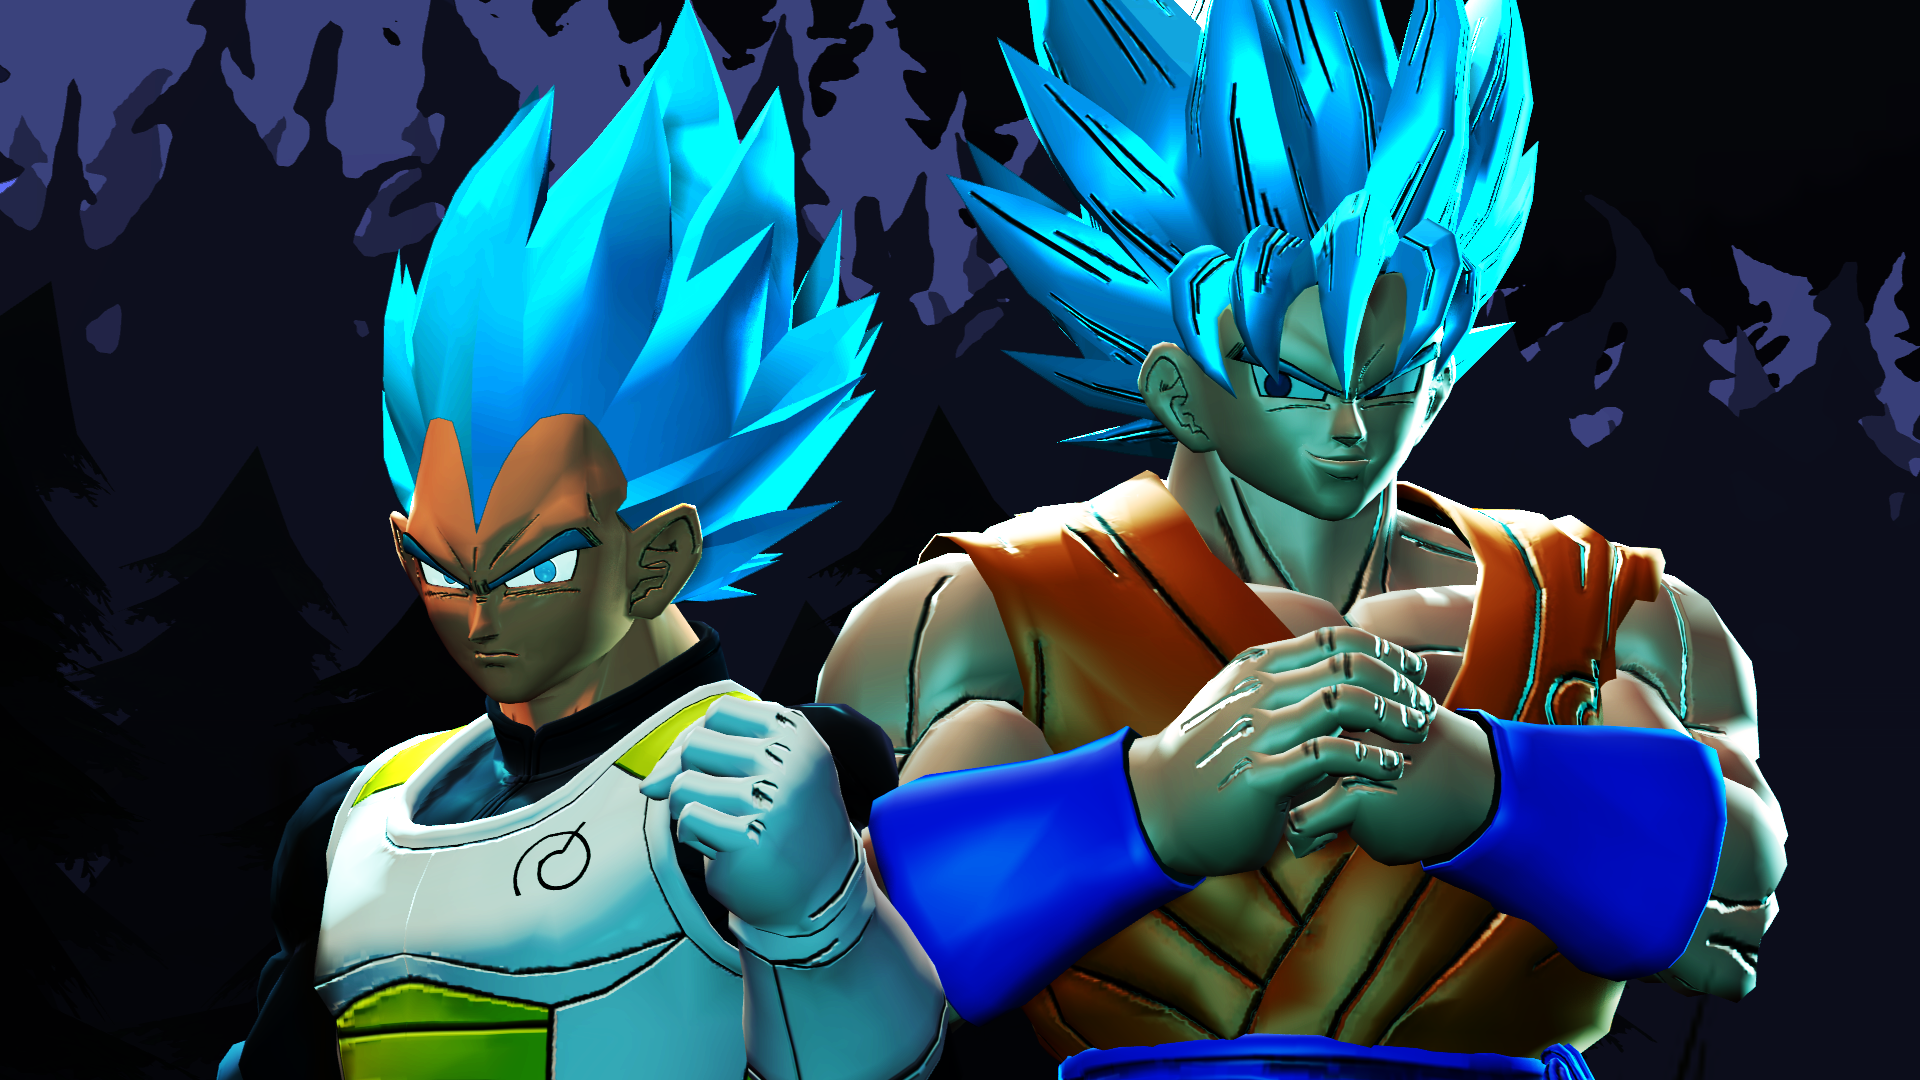 super saiyan blue Goku by Xavier-Artz on DeviantArt